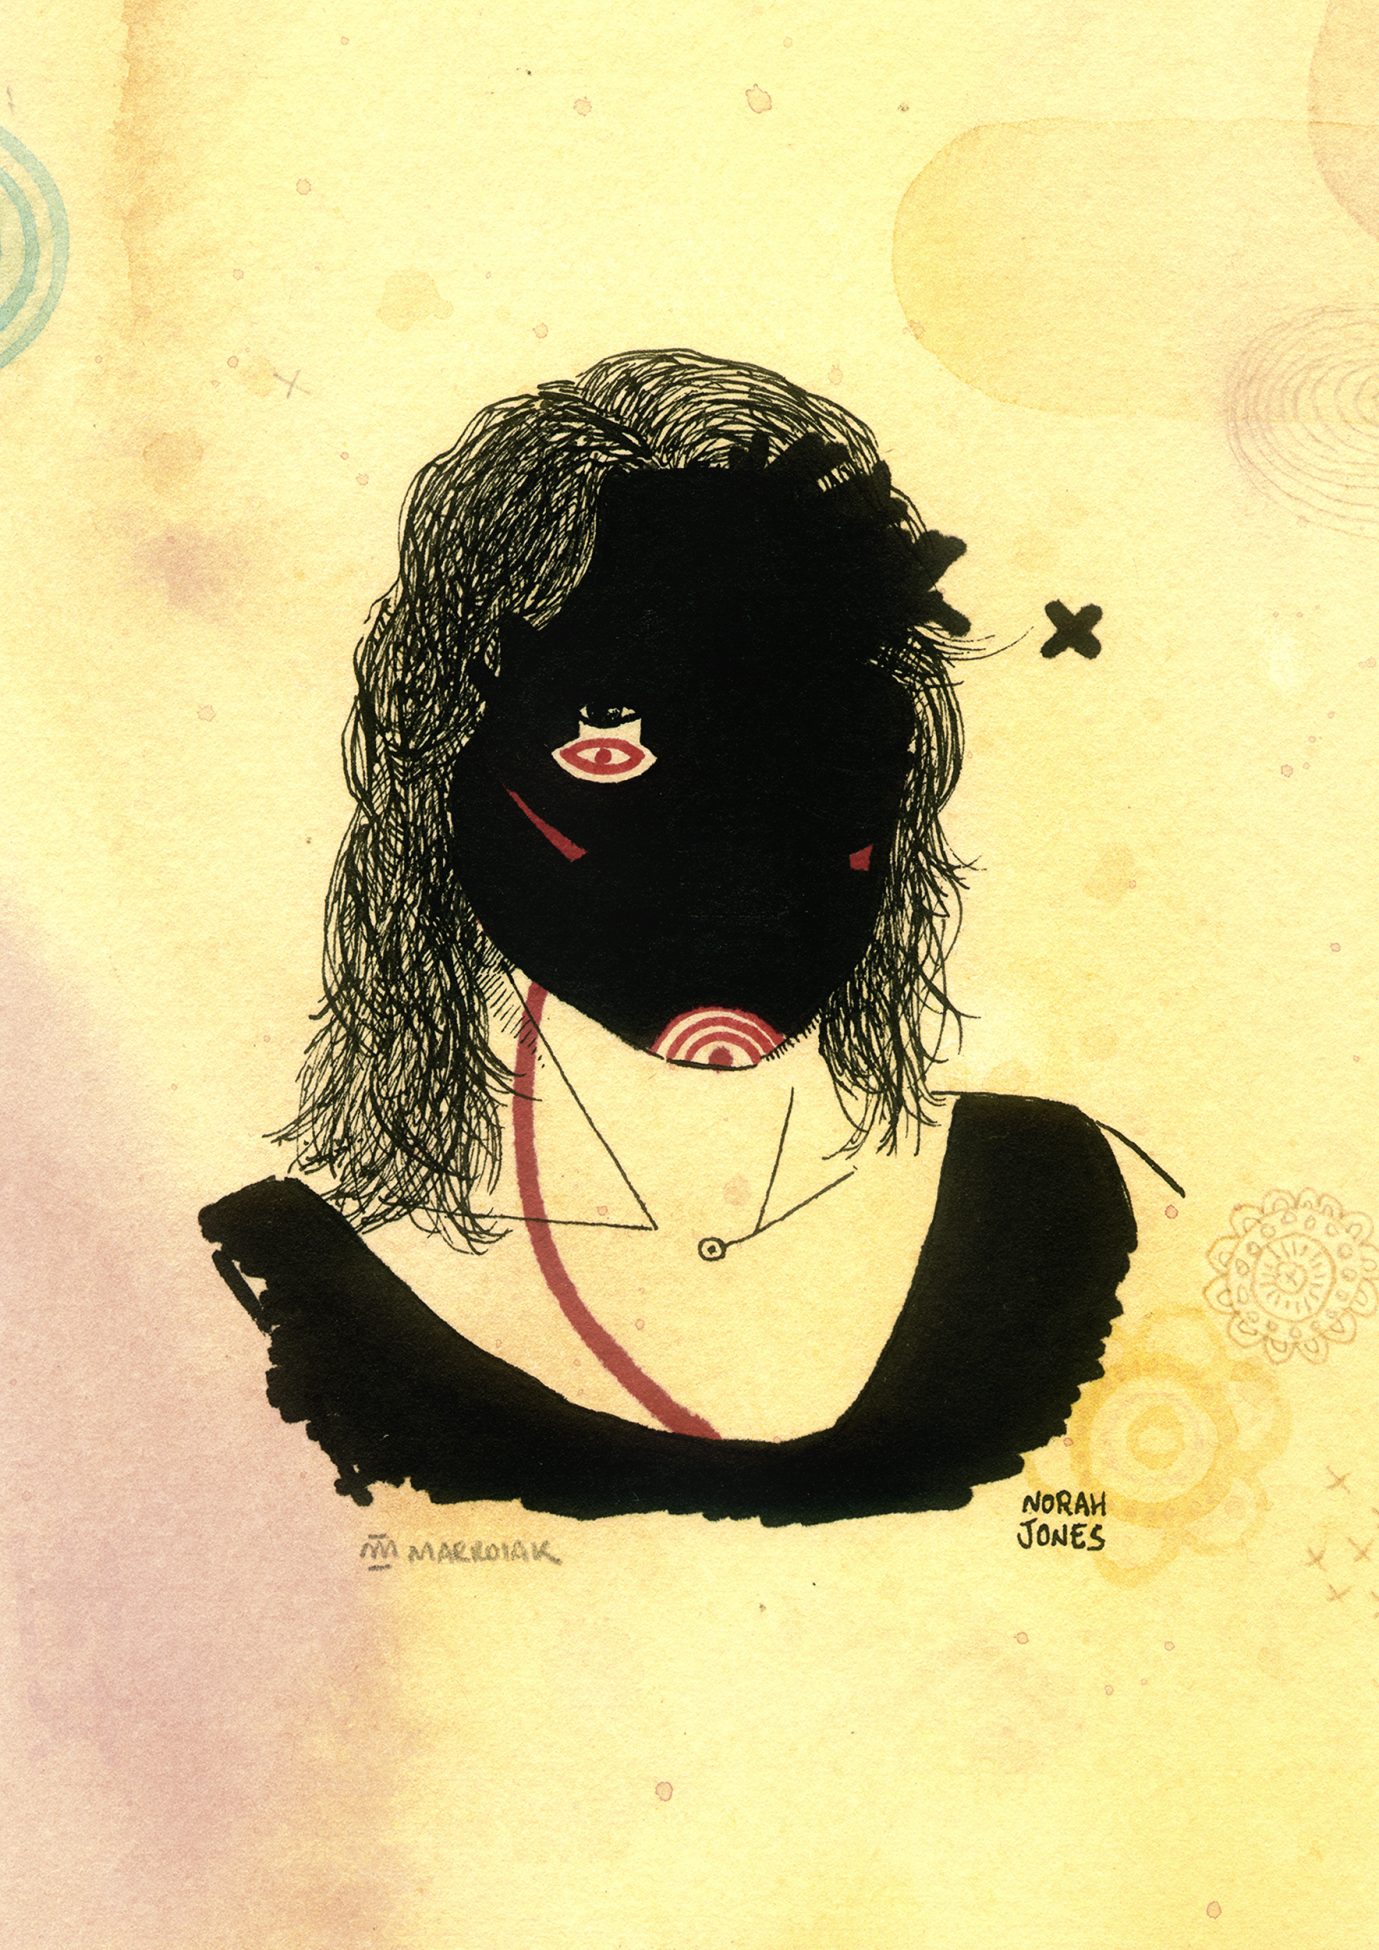 Retrato ilustrado de la cantante norah jones. Acuarela y tinta. Dibujos grunge